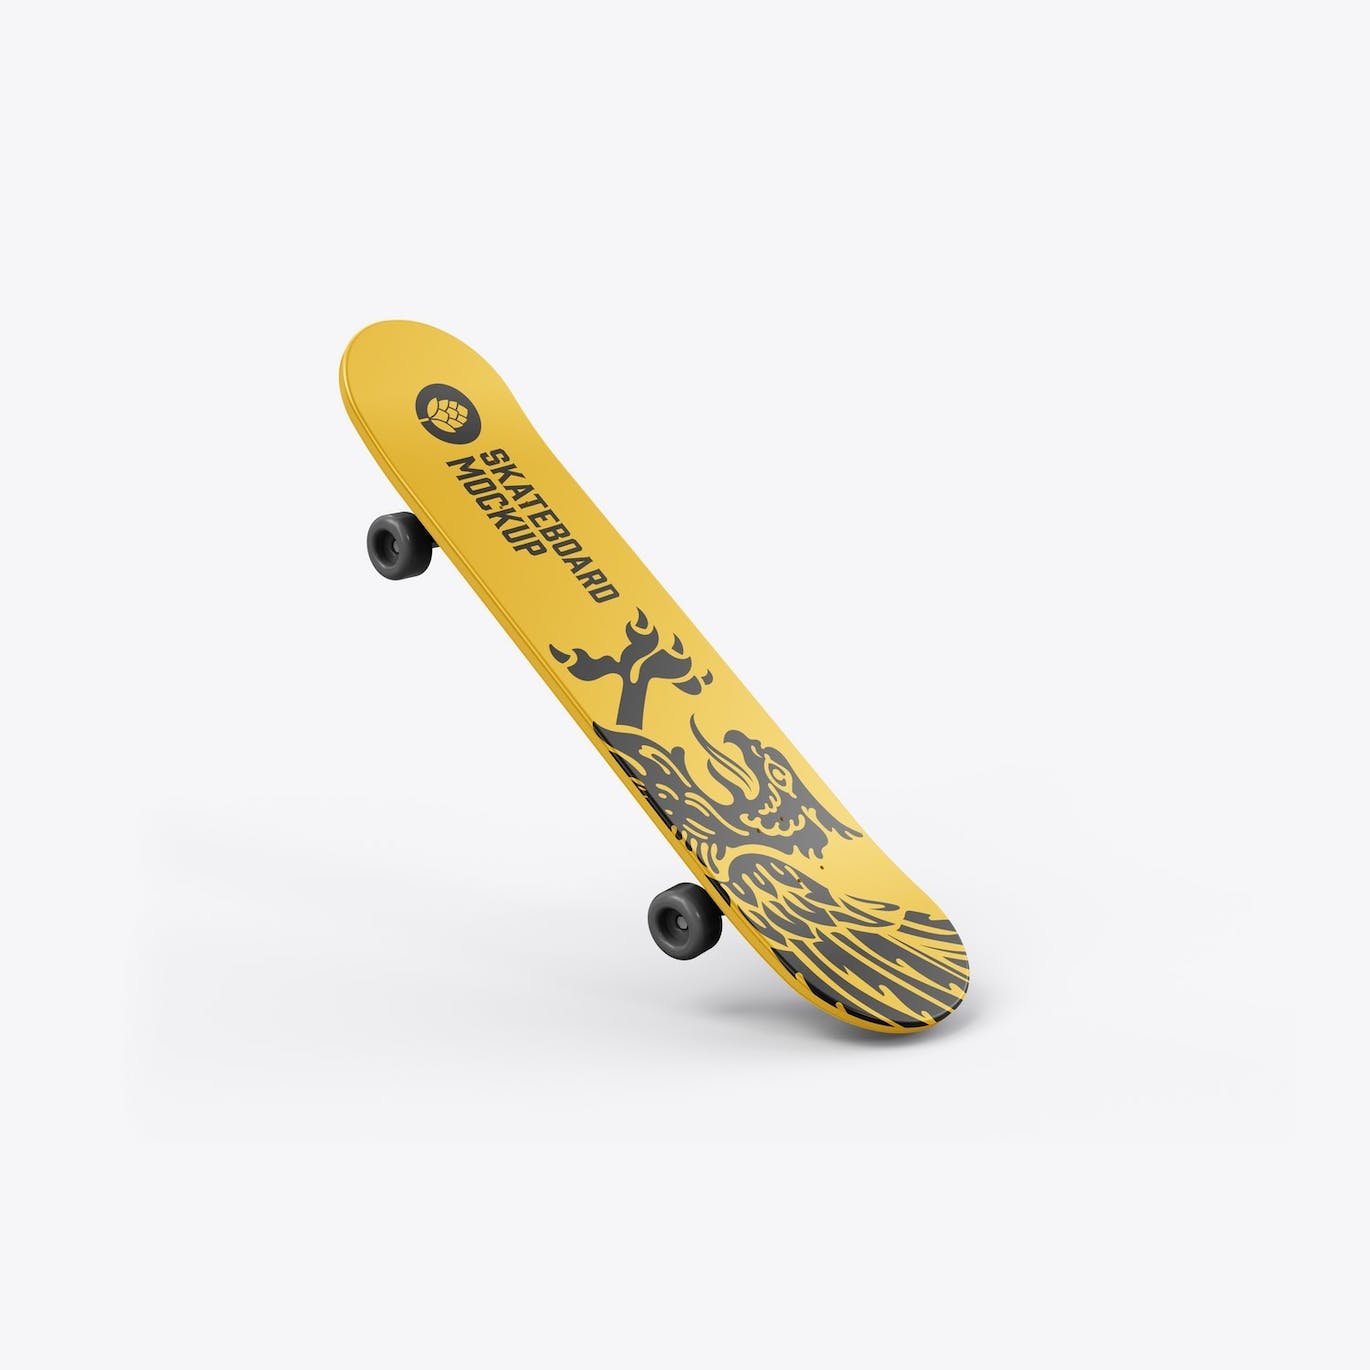 骑行滑板品牌设计样机 Skateboard Mockup 样机素材 第10张